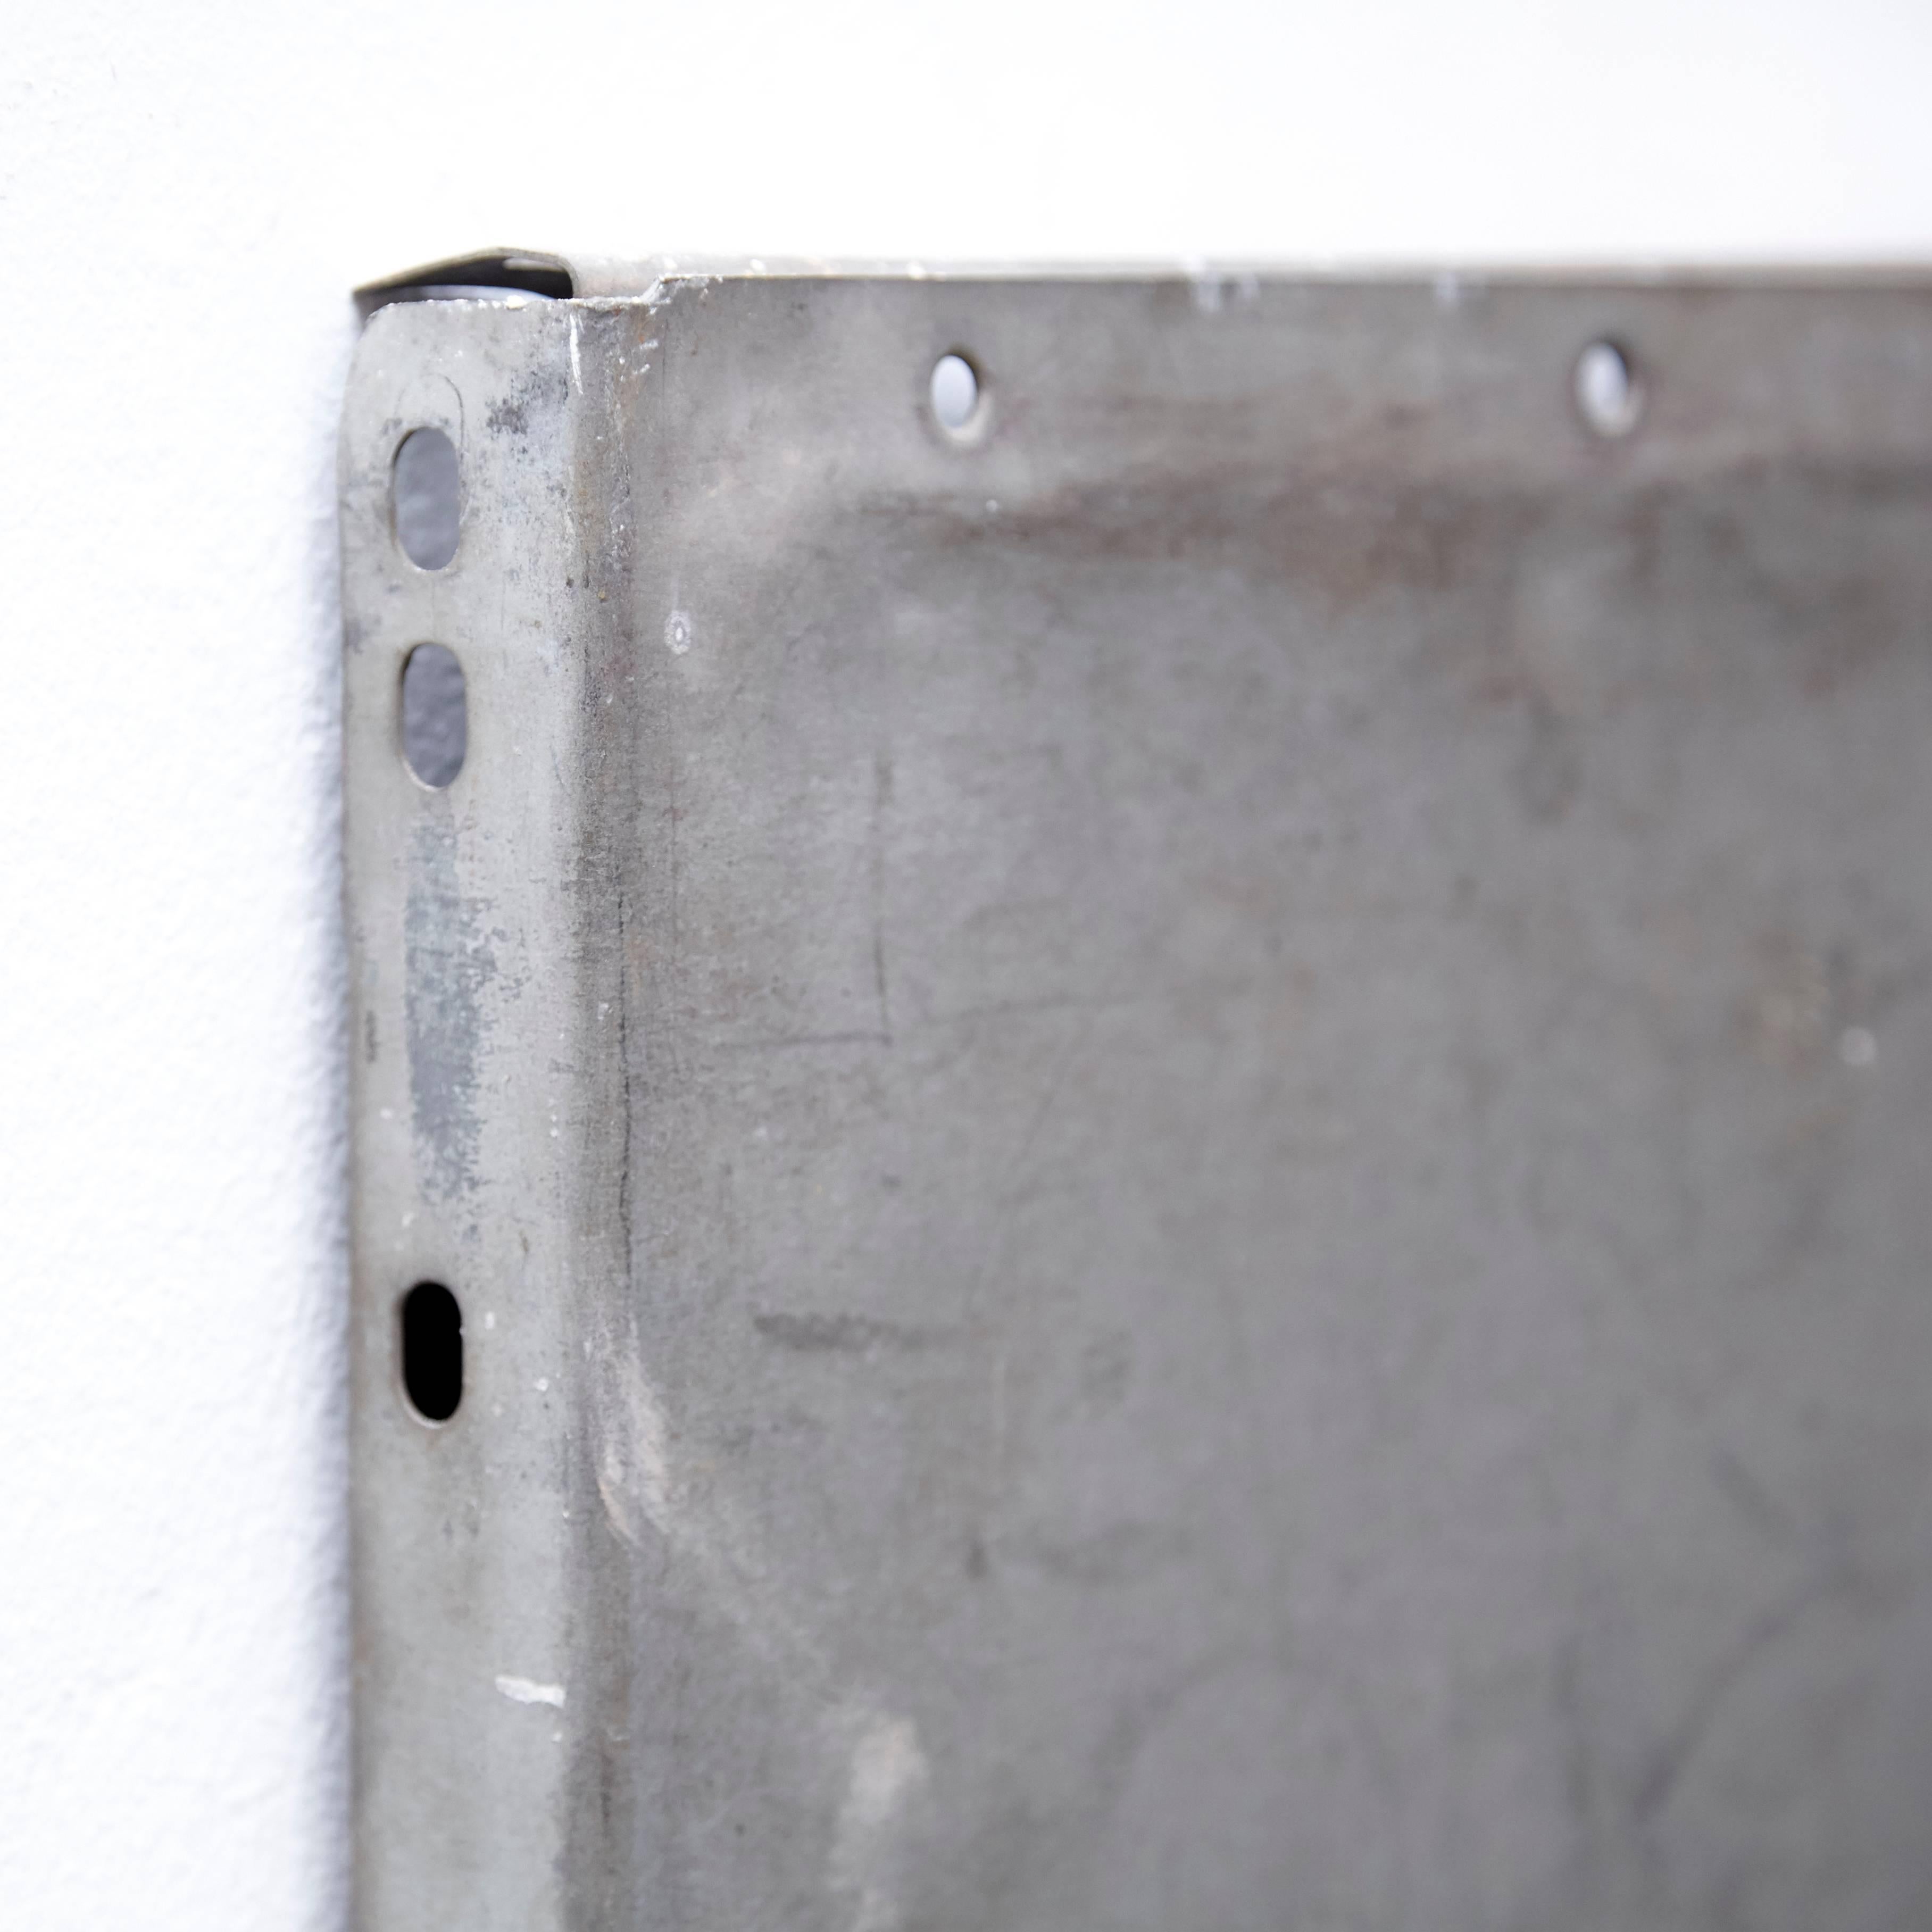 Ramon Horts, Minimalismus-Kunstwerk.

Strukturen aus Metallkompositionen, hergestellt in Barcelona, ca. 2016. Für eine Einzelausstellung.
Signiert von ihm selbst im Gravierstempel.

Abisoliertes Metall, verrostet und lackiert.
Im